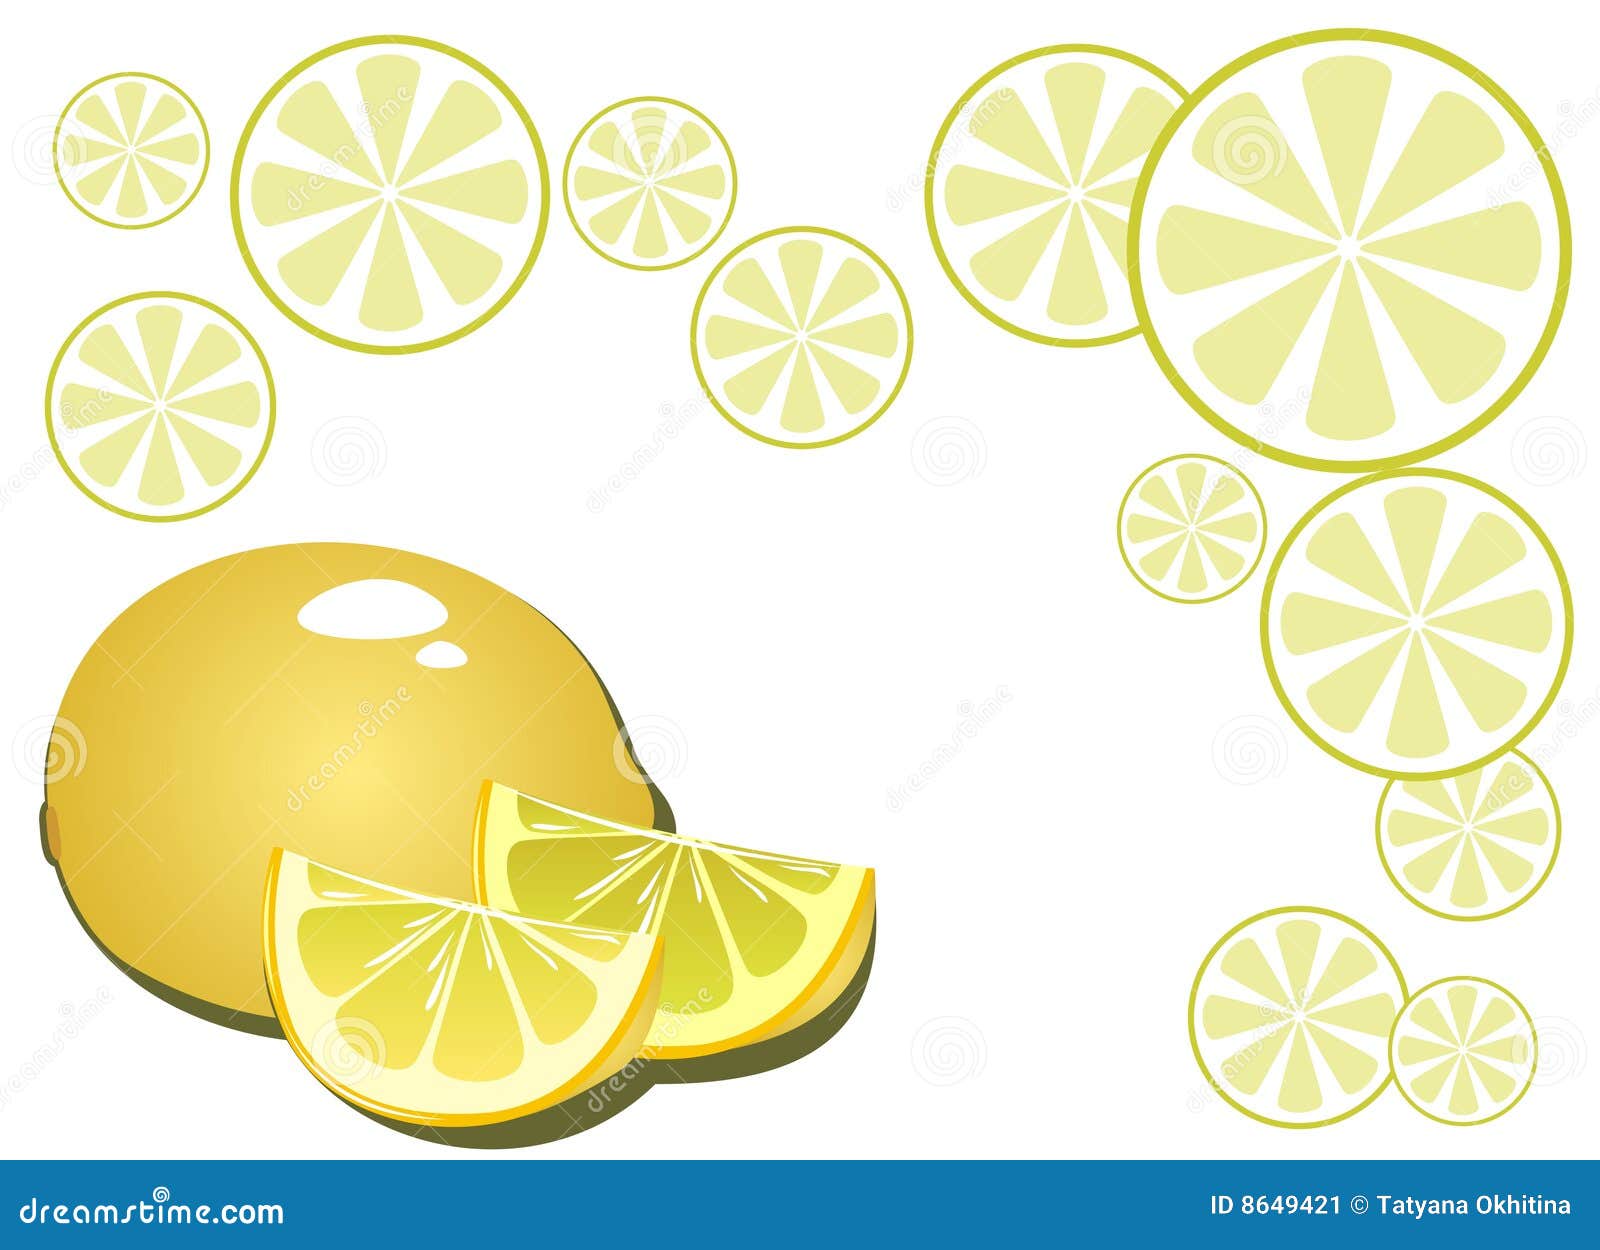 Lemon background stock vector. Illustration of artistic - 8649421